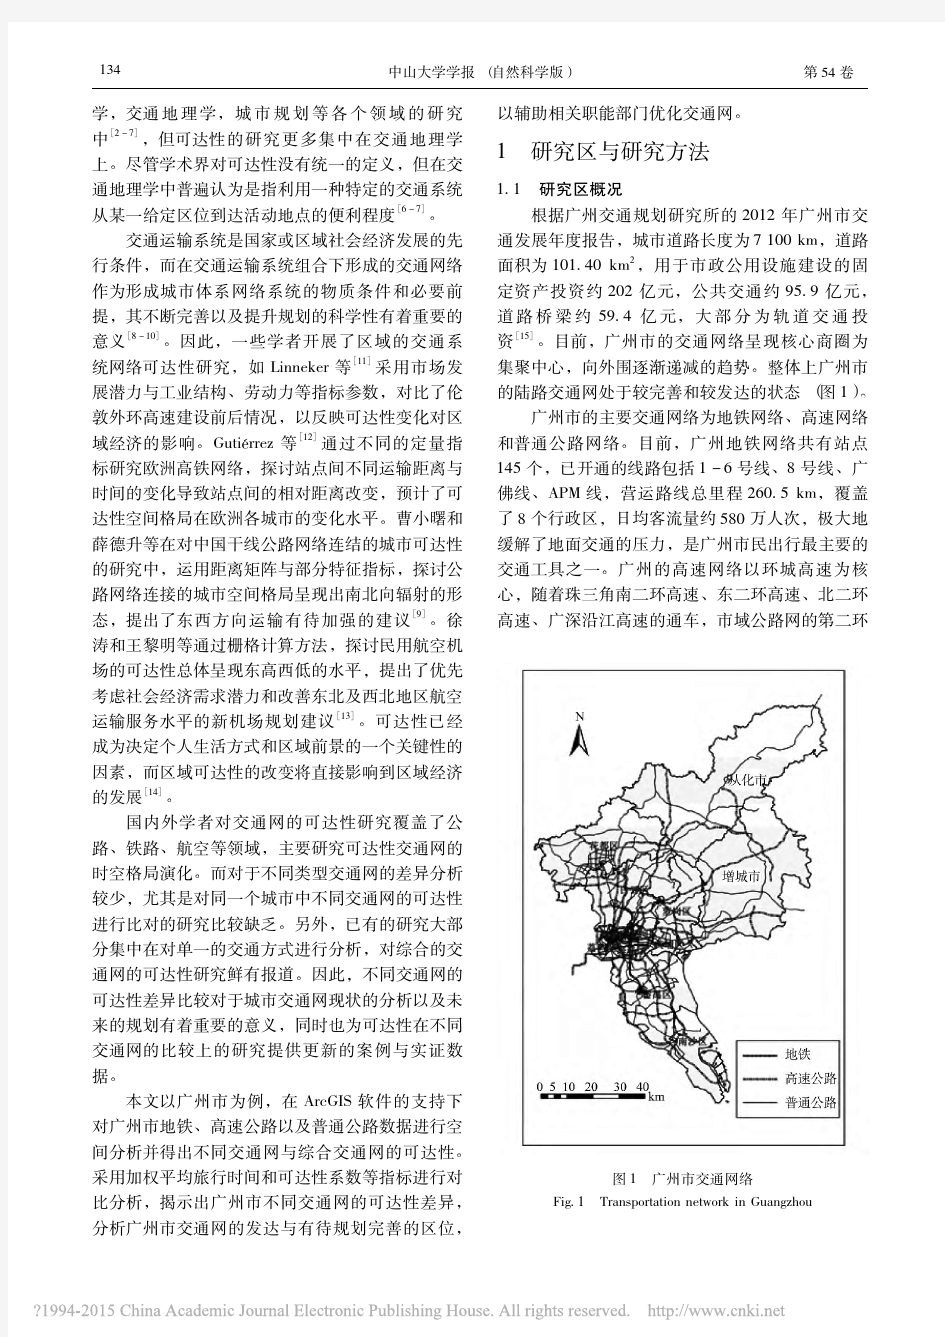 广州市不同交通网的可达性差异分析